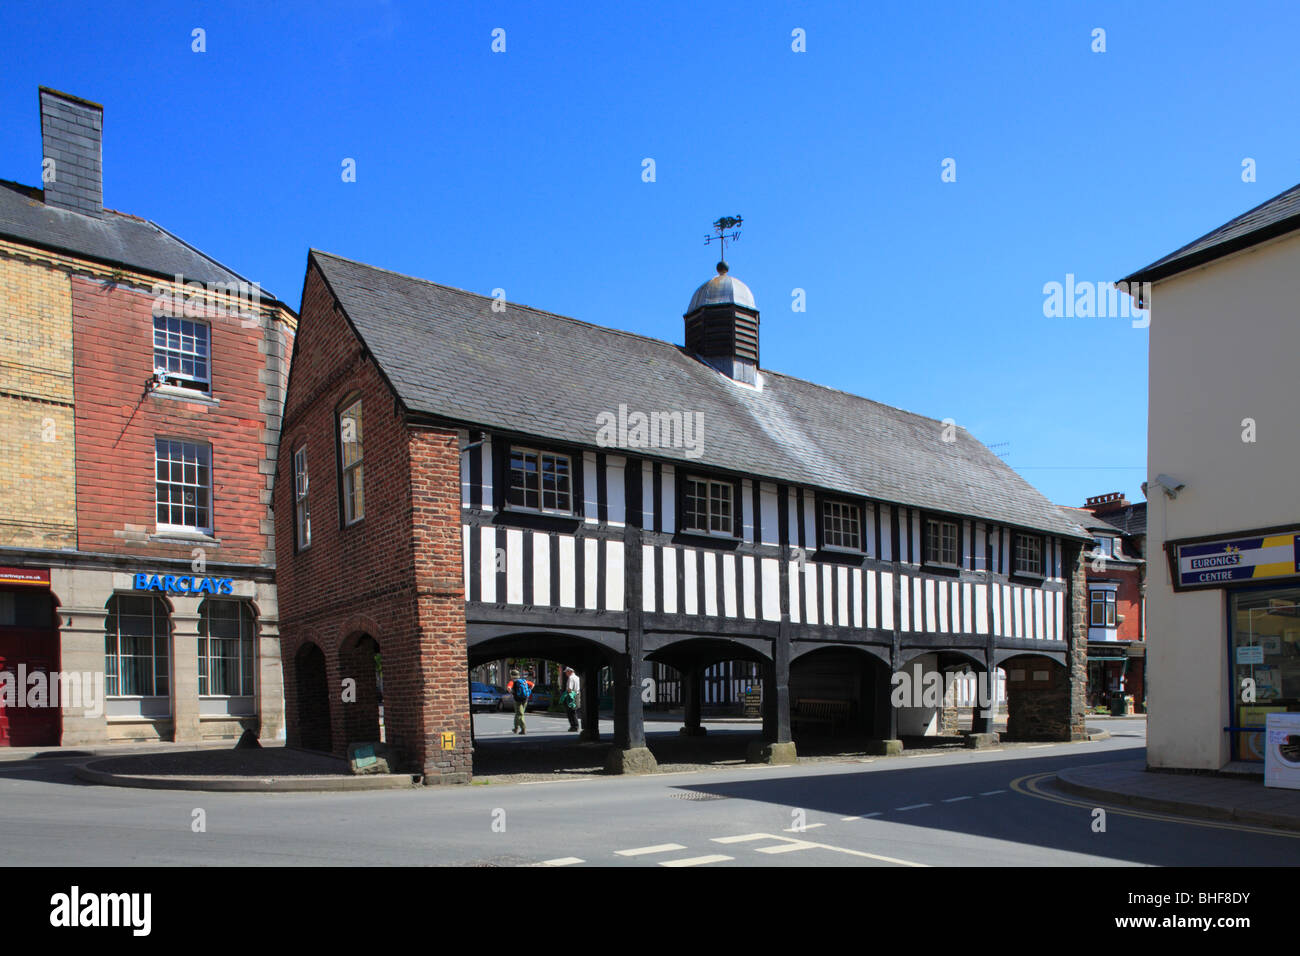 Centro storico di legno a sala mercato risalente agli inizi del XVII secolo. Llanidloes, Powys, Wales, Regno Unito. Foto Stock